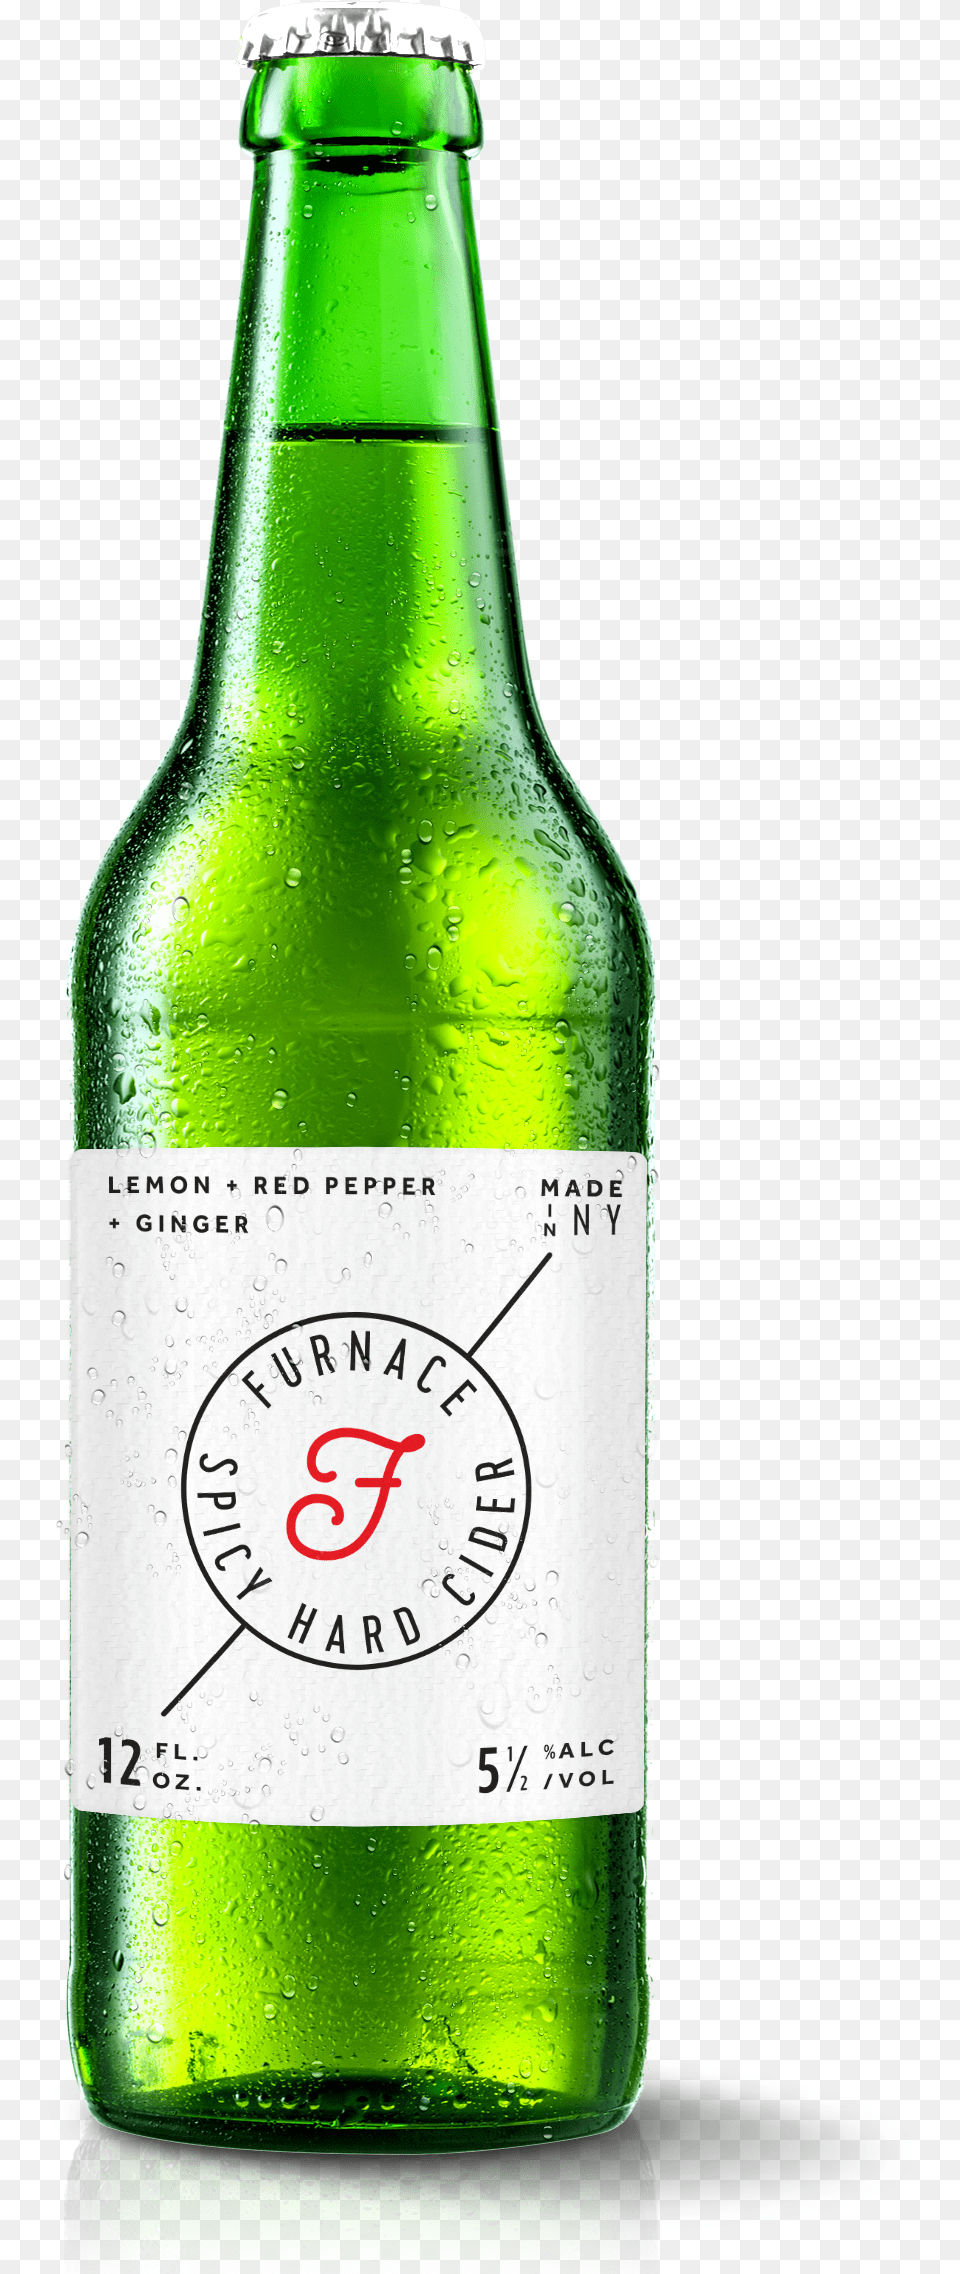 Download A Large Image Of Furnace Cider Bottle And Glass Bottle, Alcohol, Beer, Beer Bottle, Beverage Free Png